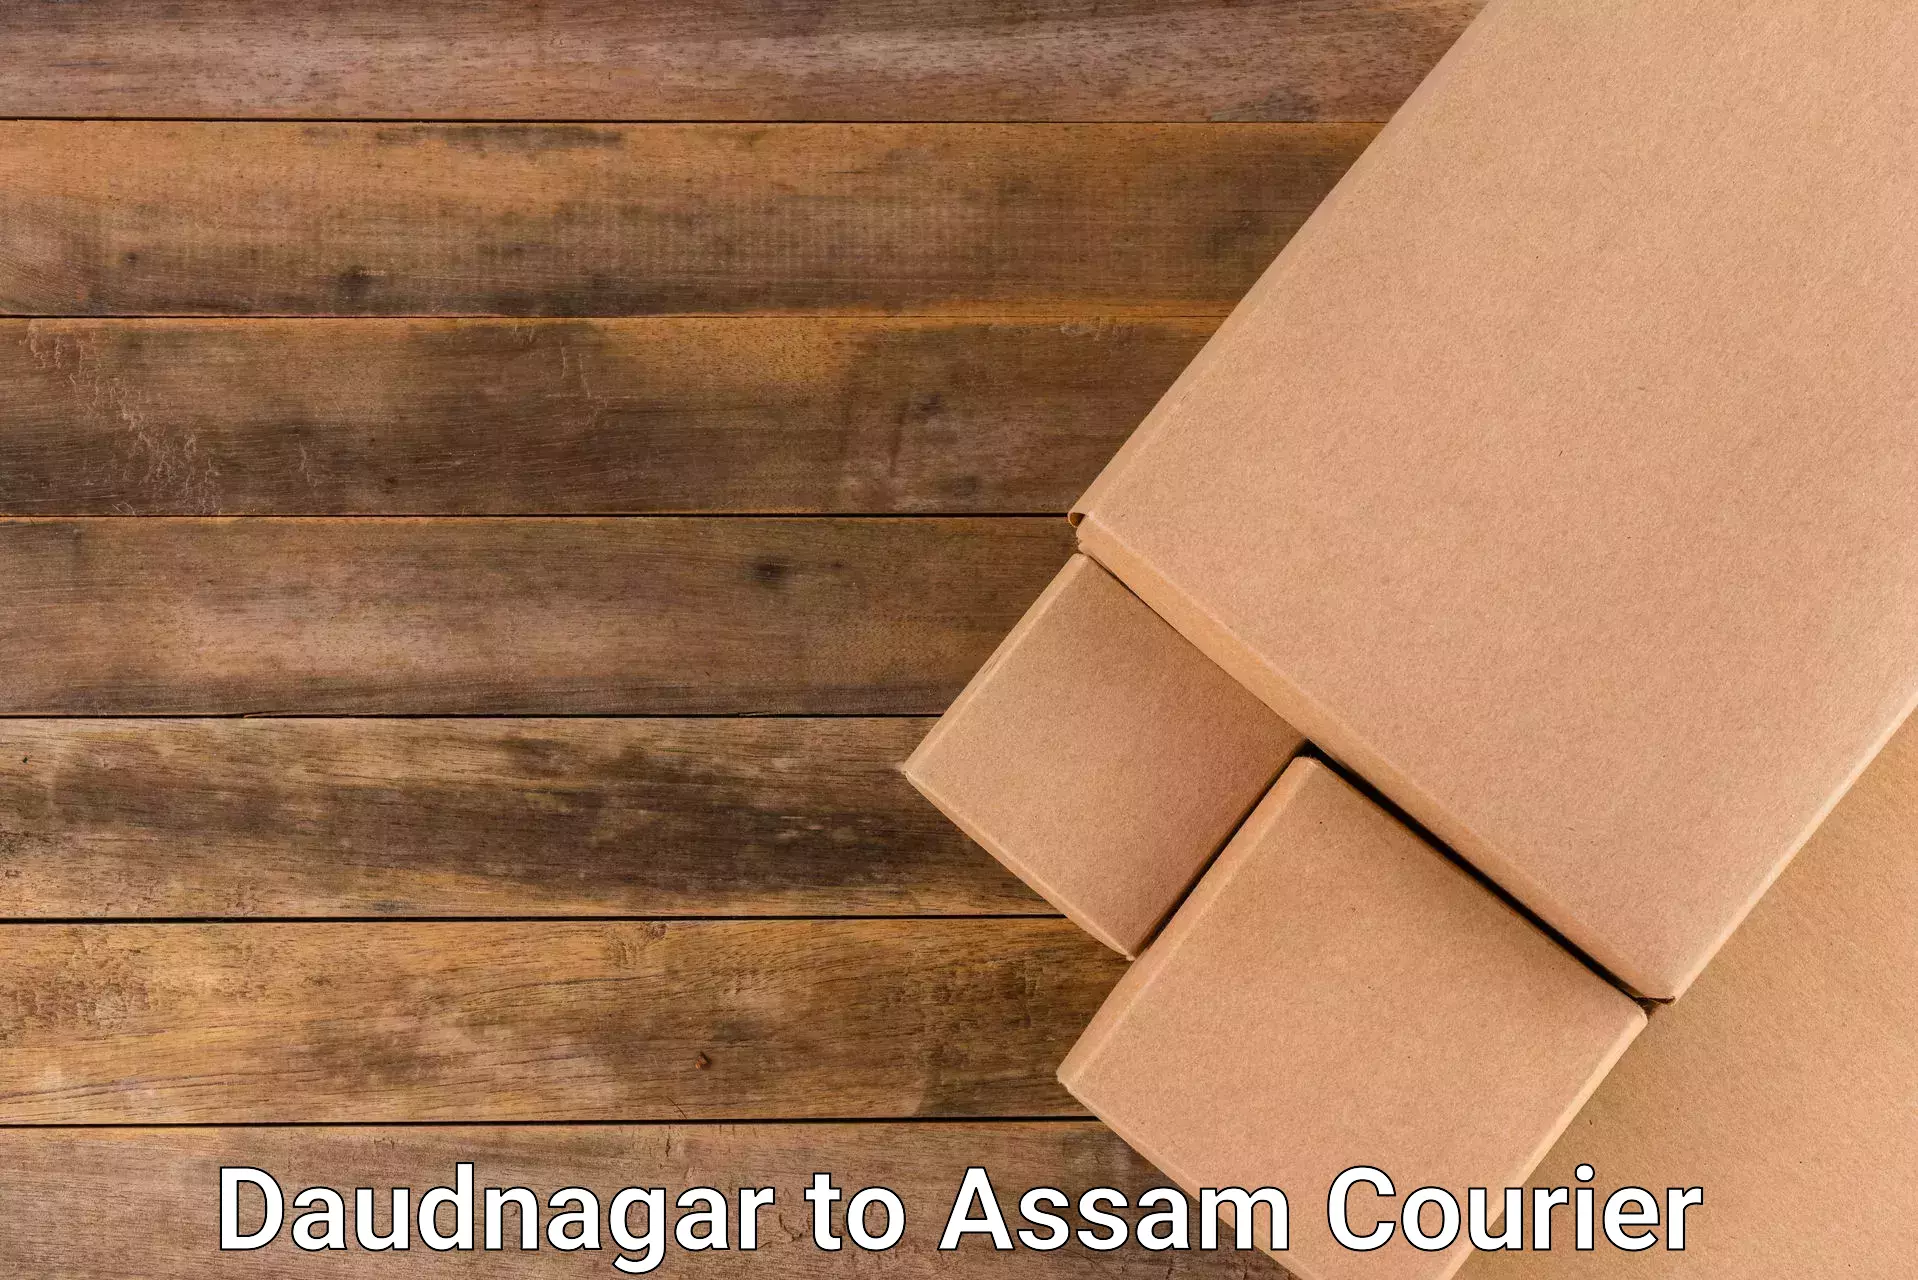 Next-generation courier services in Daudnagar to Dergaon